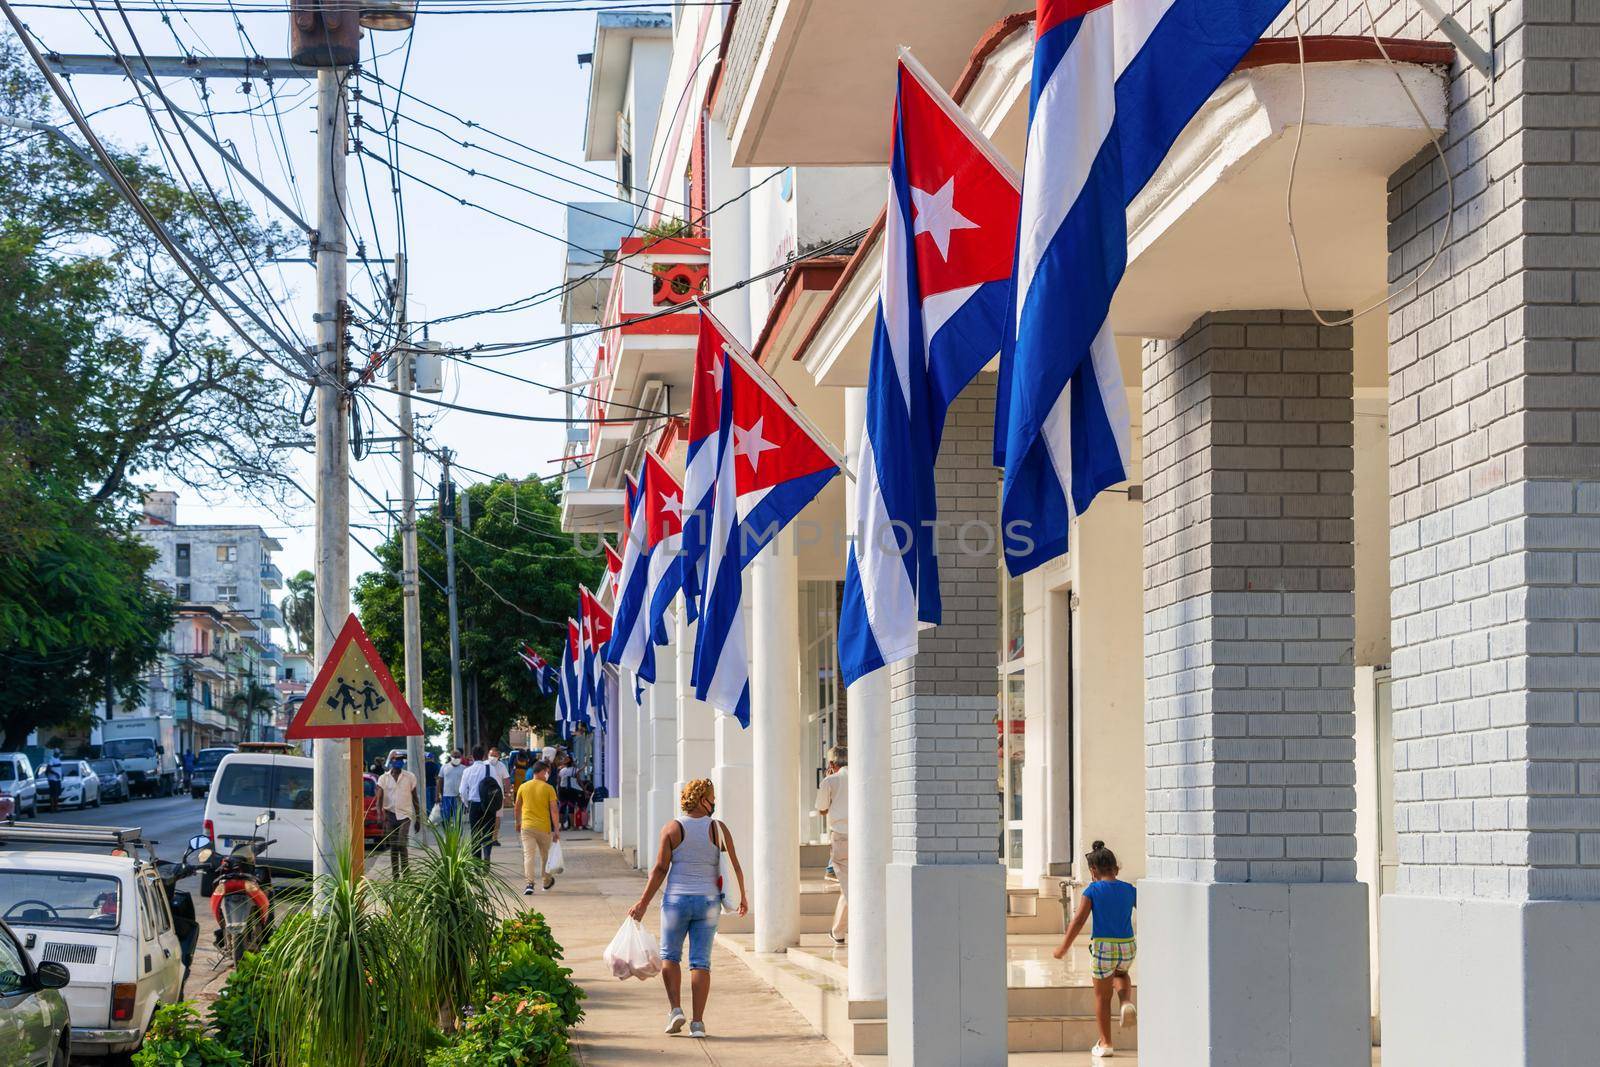 Cuban flags by jrivalta